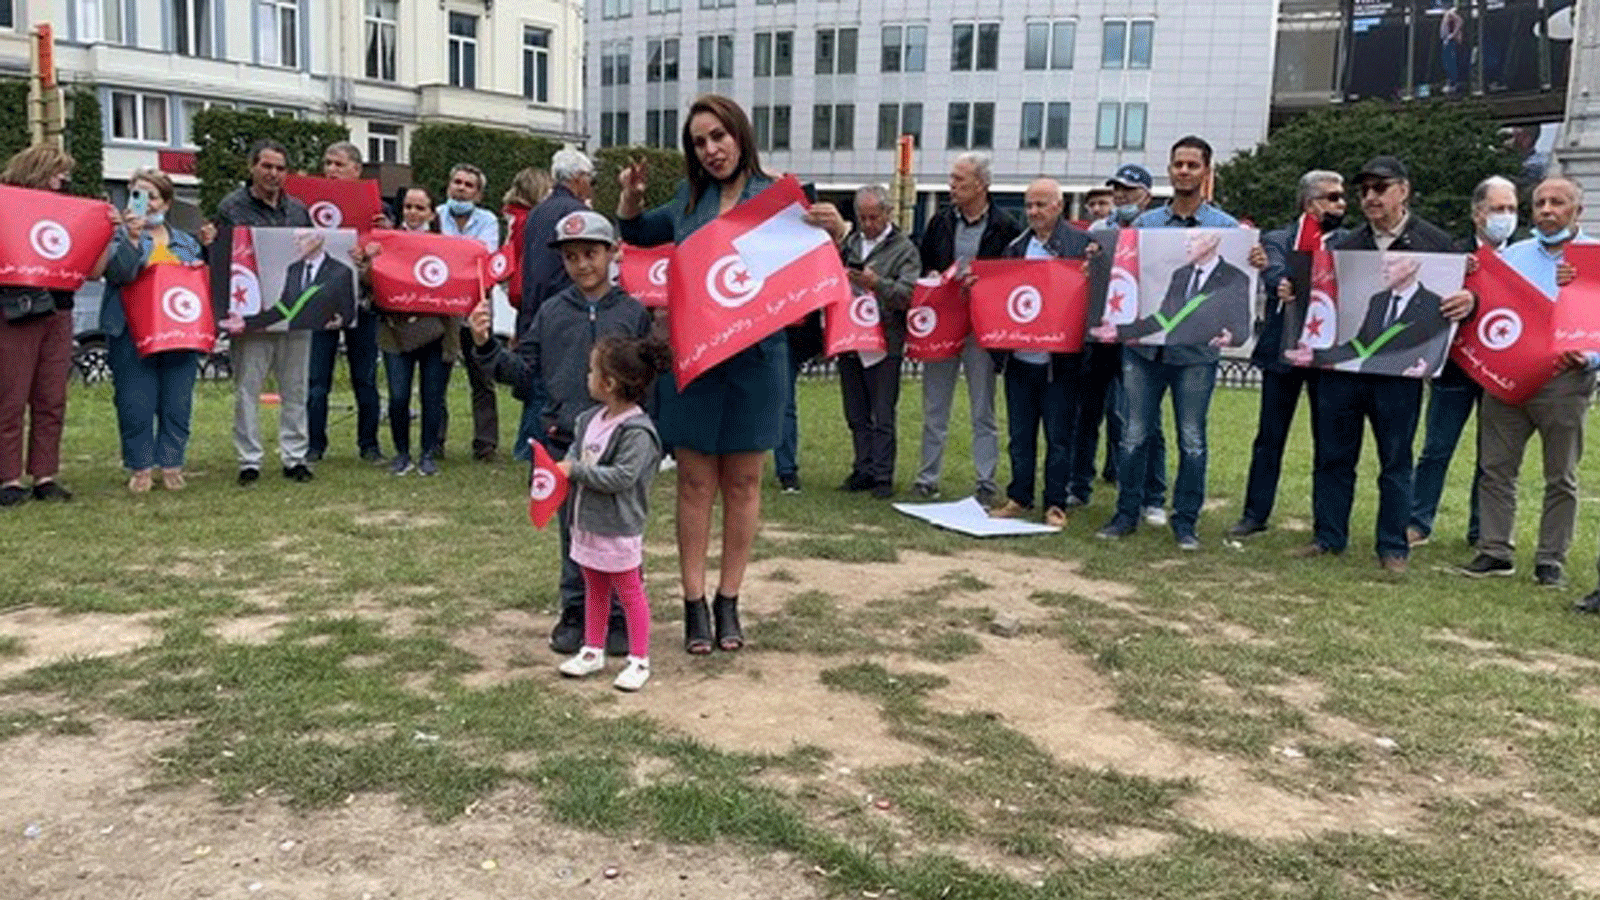 تونسيون يعتصمون أمام المقر الأوروبي في بروكسل بتاريخ 31 تموز/يوليو2021 تضامناً مع قرارات الرئيس سعيد الاصلاحية